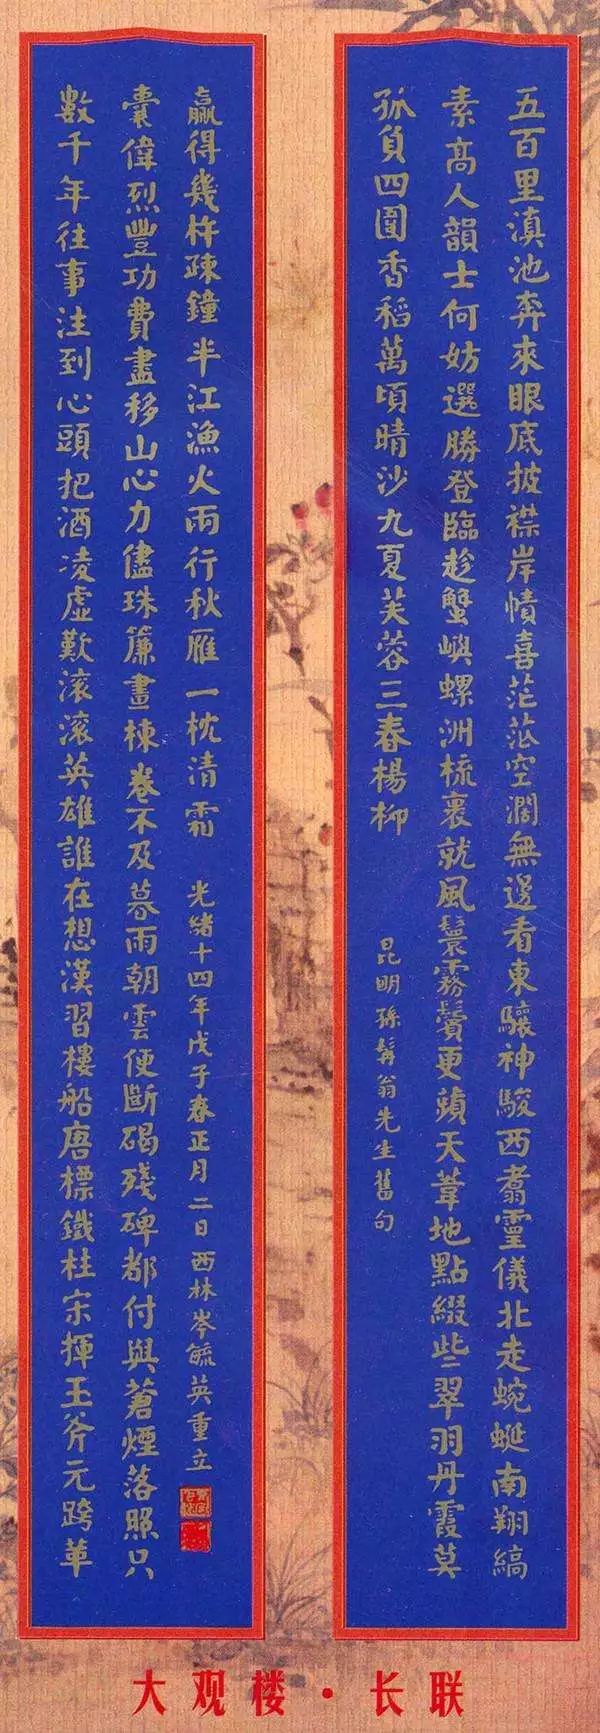 八副代表了中国楹联文化最高水平的长联，能看完就是高手